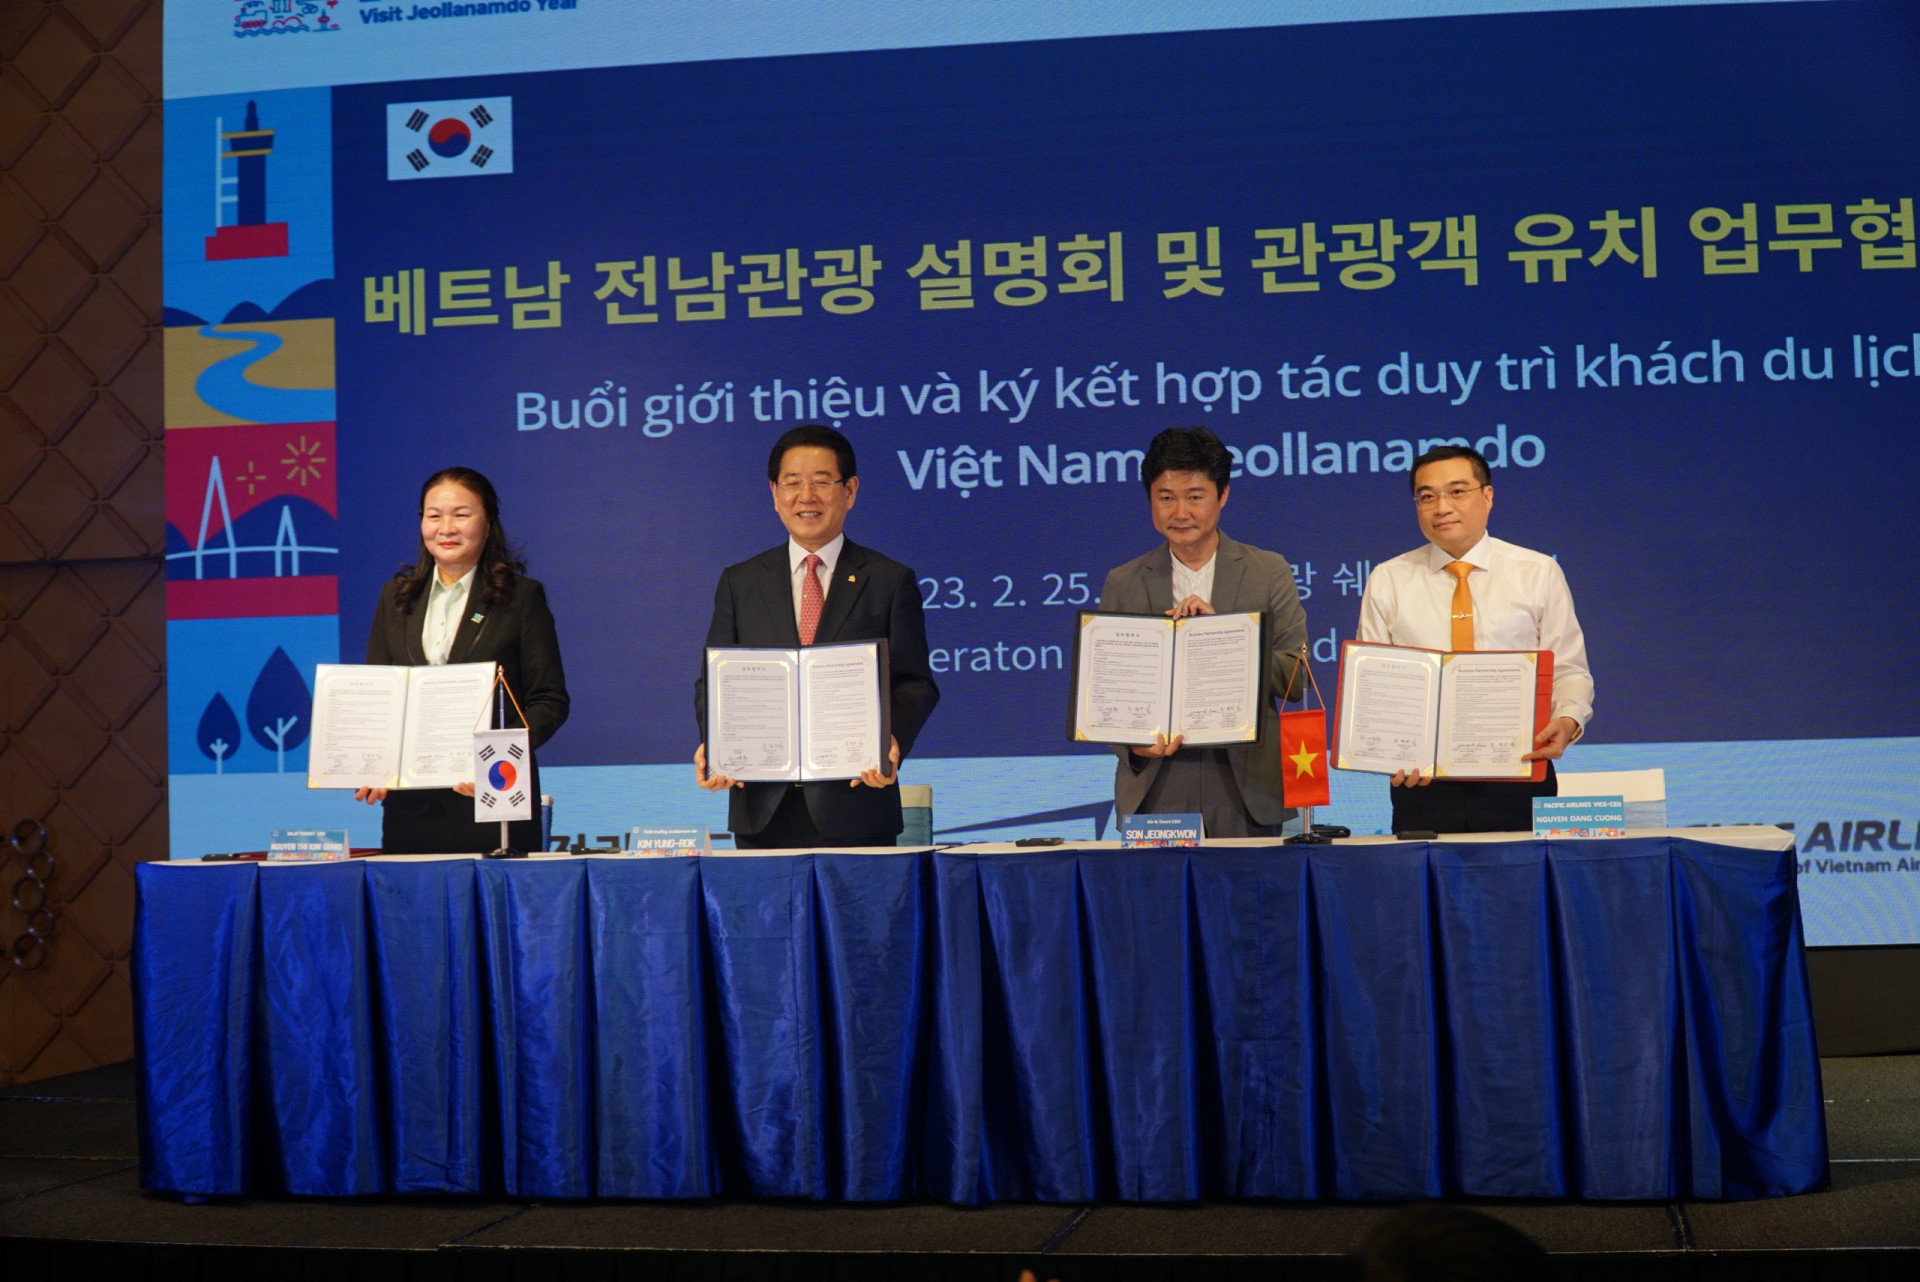 Doanh nghiệp Việt Nam và Hàn Quốc cùng nhau cam kết xúc tiến thúc đẩy khai thác tour du lịch đến Jeollanam-do